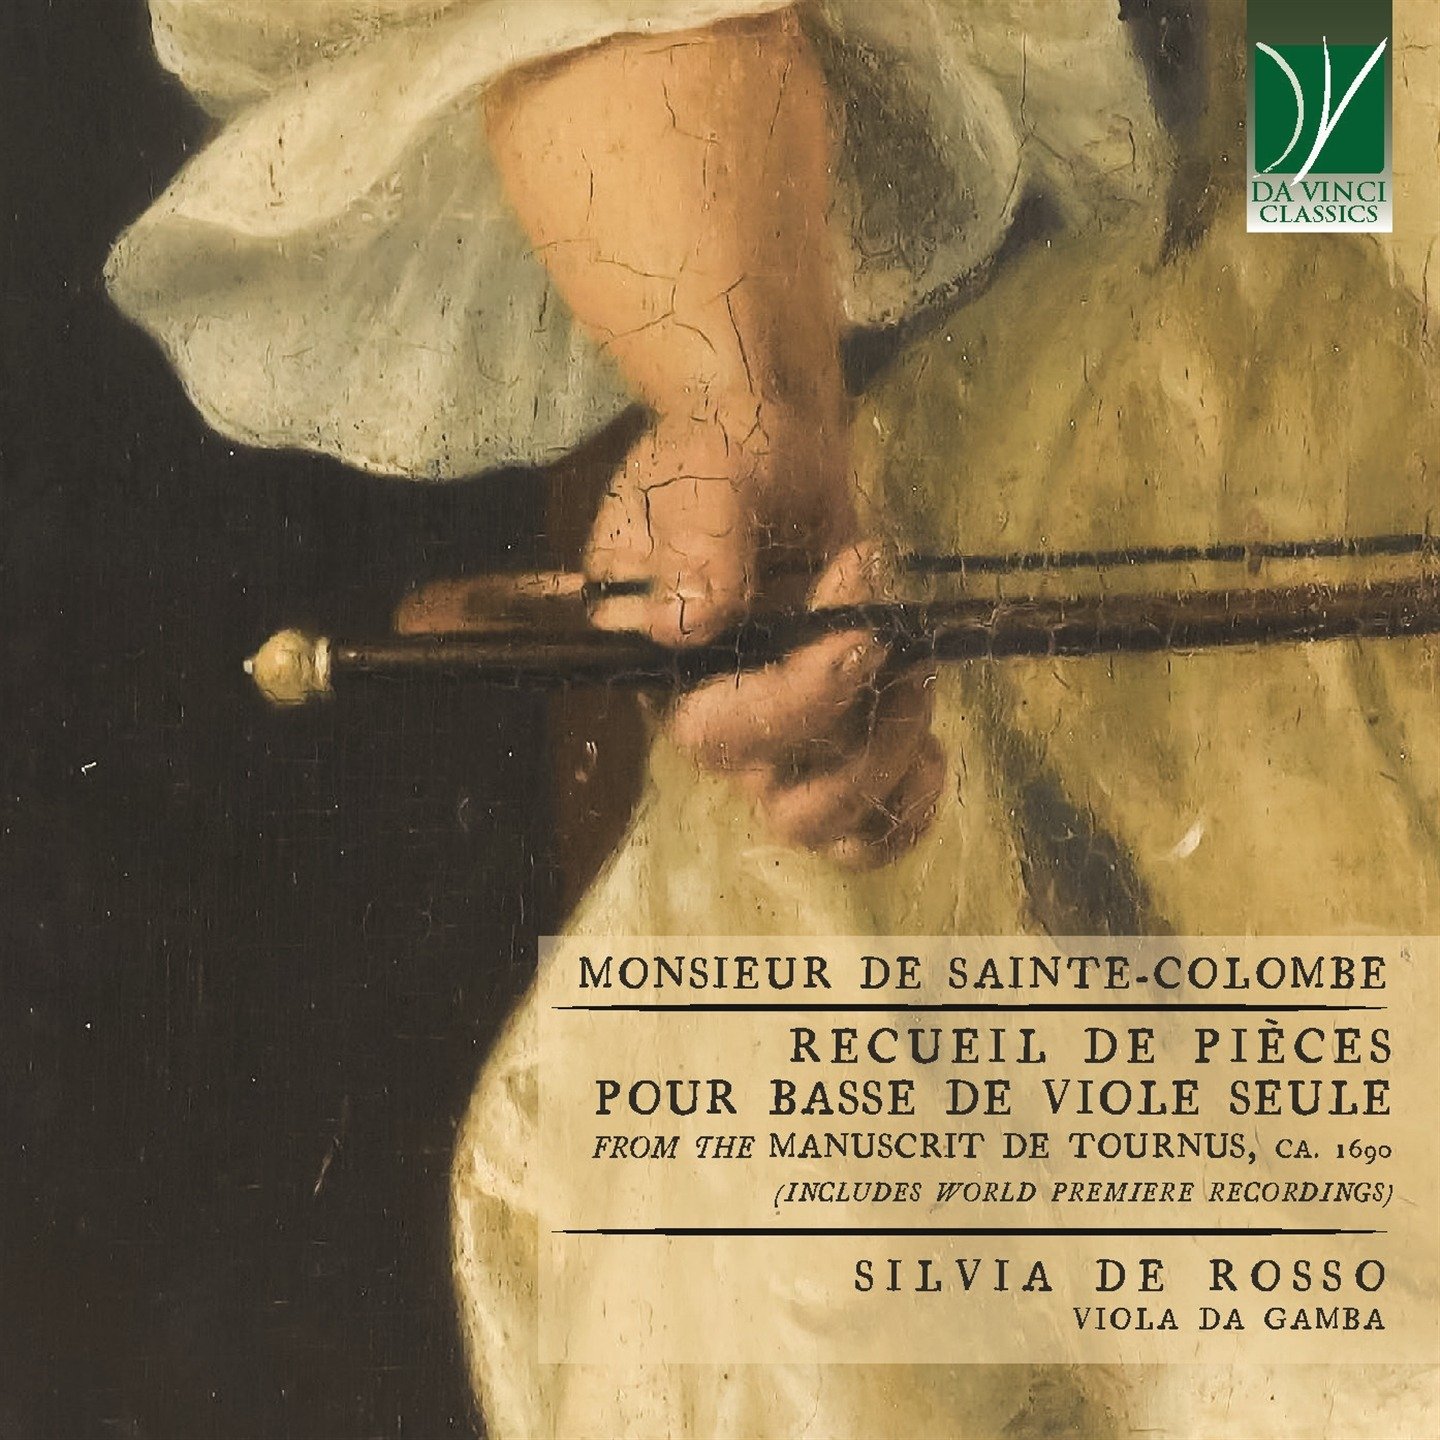 CD Shop - ROSSO, SILVIA DE SAINTE-COLOMBE: RECUEIL DE PIECES POUR BASSE DE VIOLE SEULE (TOURNUS MANUSCRIPT, CA. 1690)